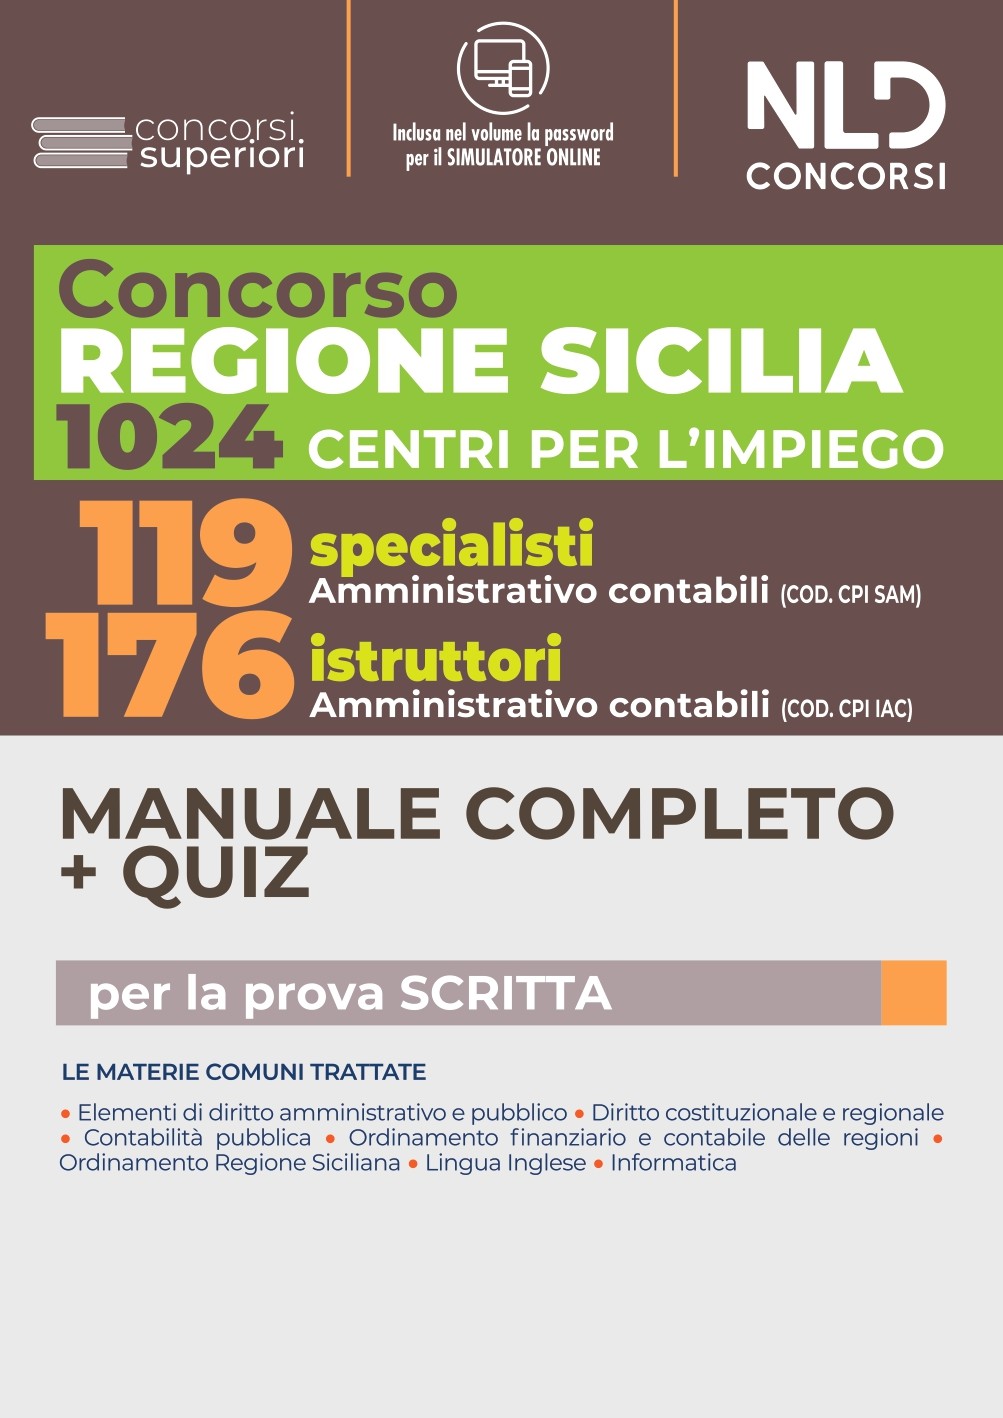 CPI SICILIA Concorso 1024 Regione Sicilia: Manuale Completo + Quiz per 119 Specialisti + 176 Istruttori Amministrativo Contabili nei Centri per l